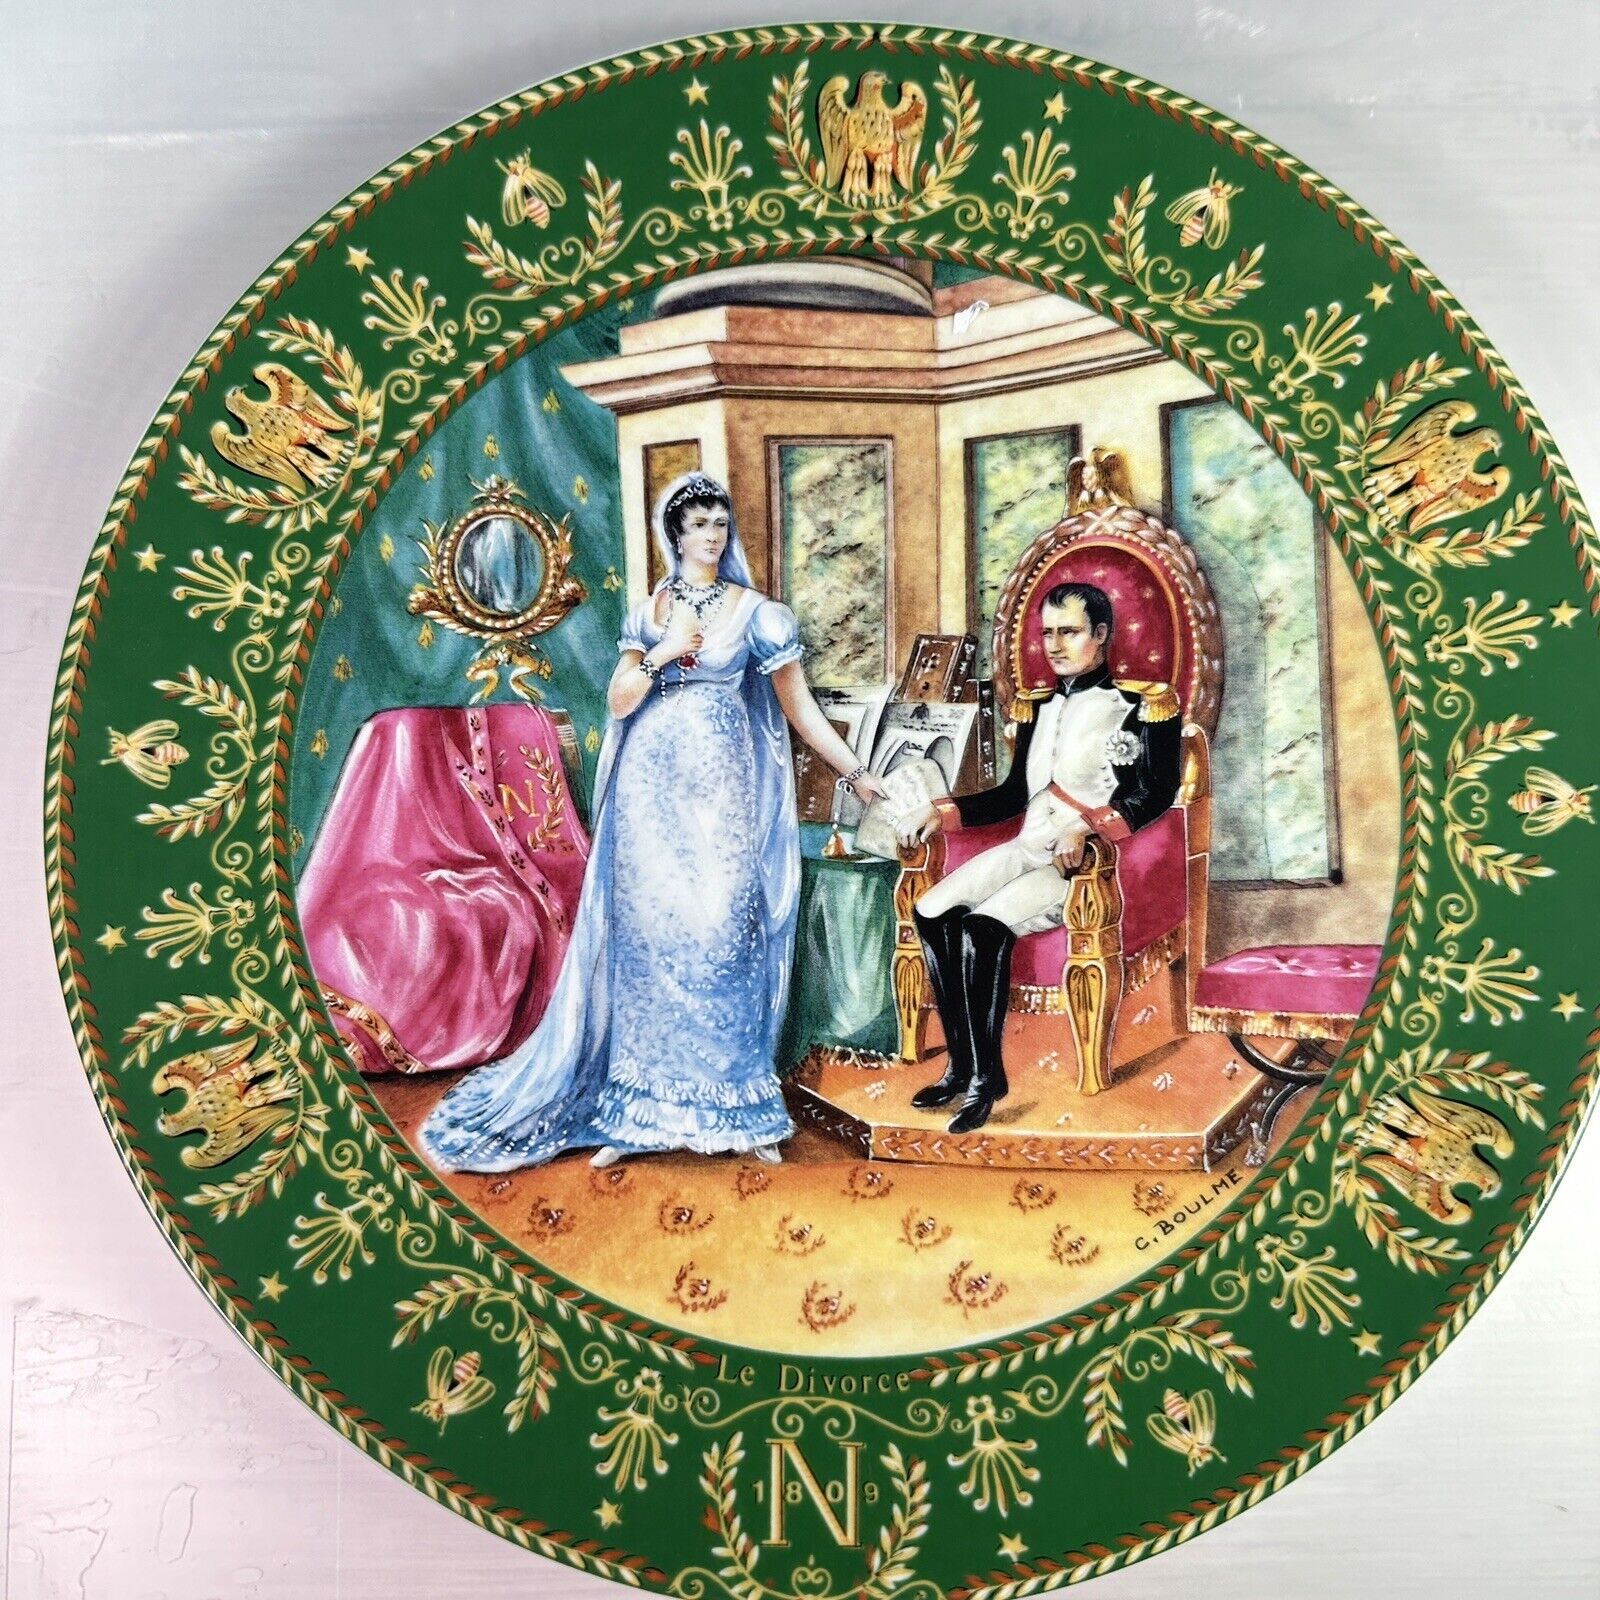 Josephine et Napoleon LE DIVORCE Limoges France 1985 Porcelain Collection Plate 